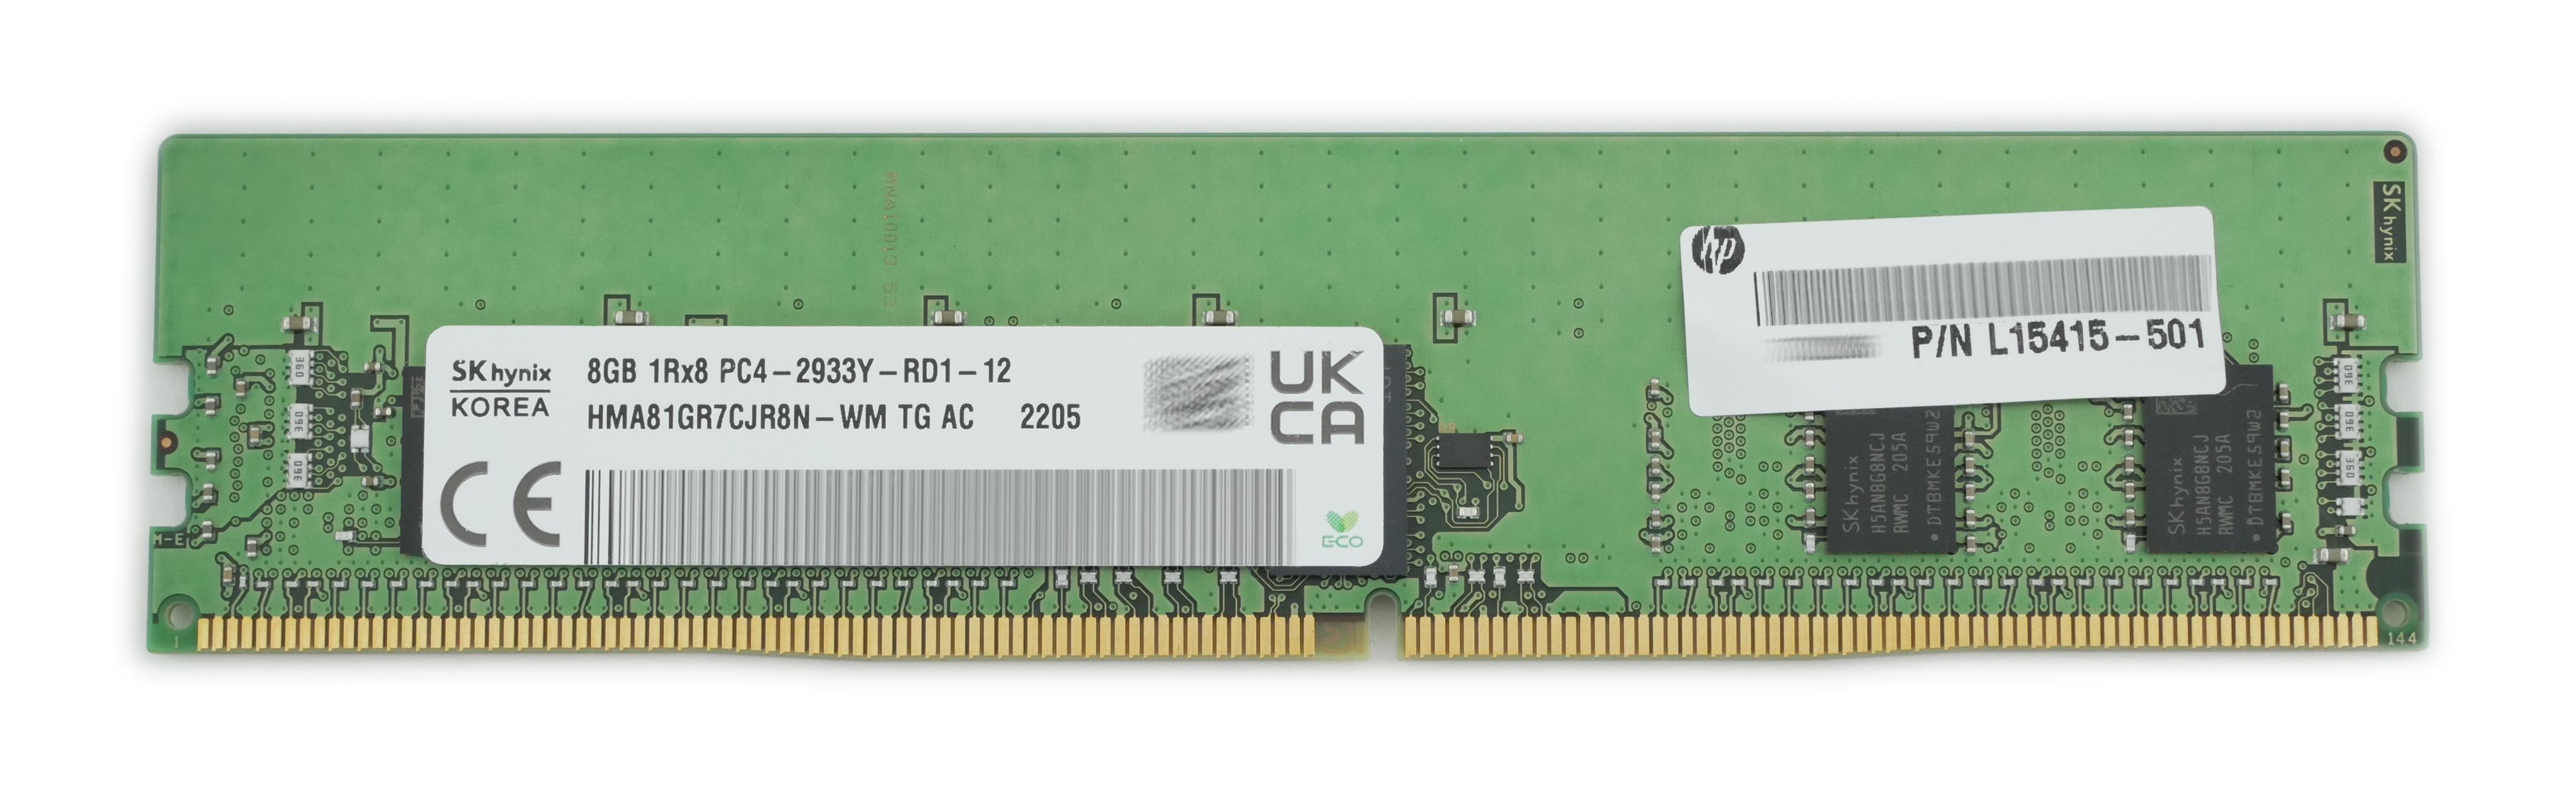 HP 8GB HMA81GR7CJR8N-WM PC4-2933Y DDR-29334 ECC 288pin L15415-501